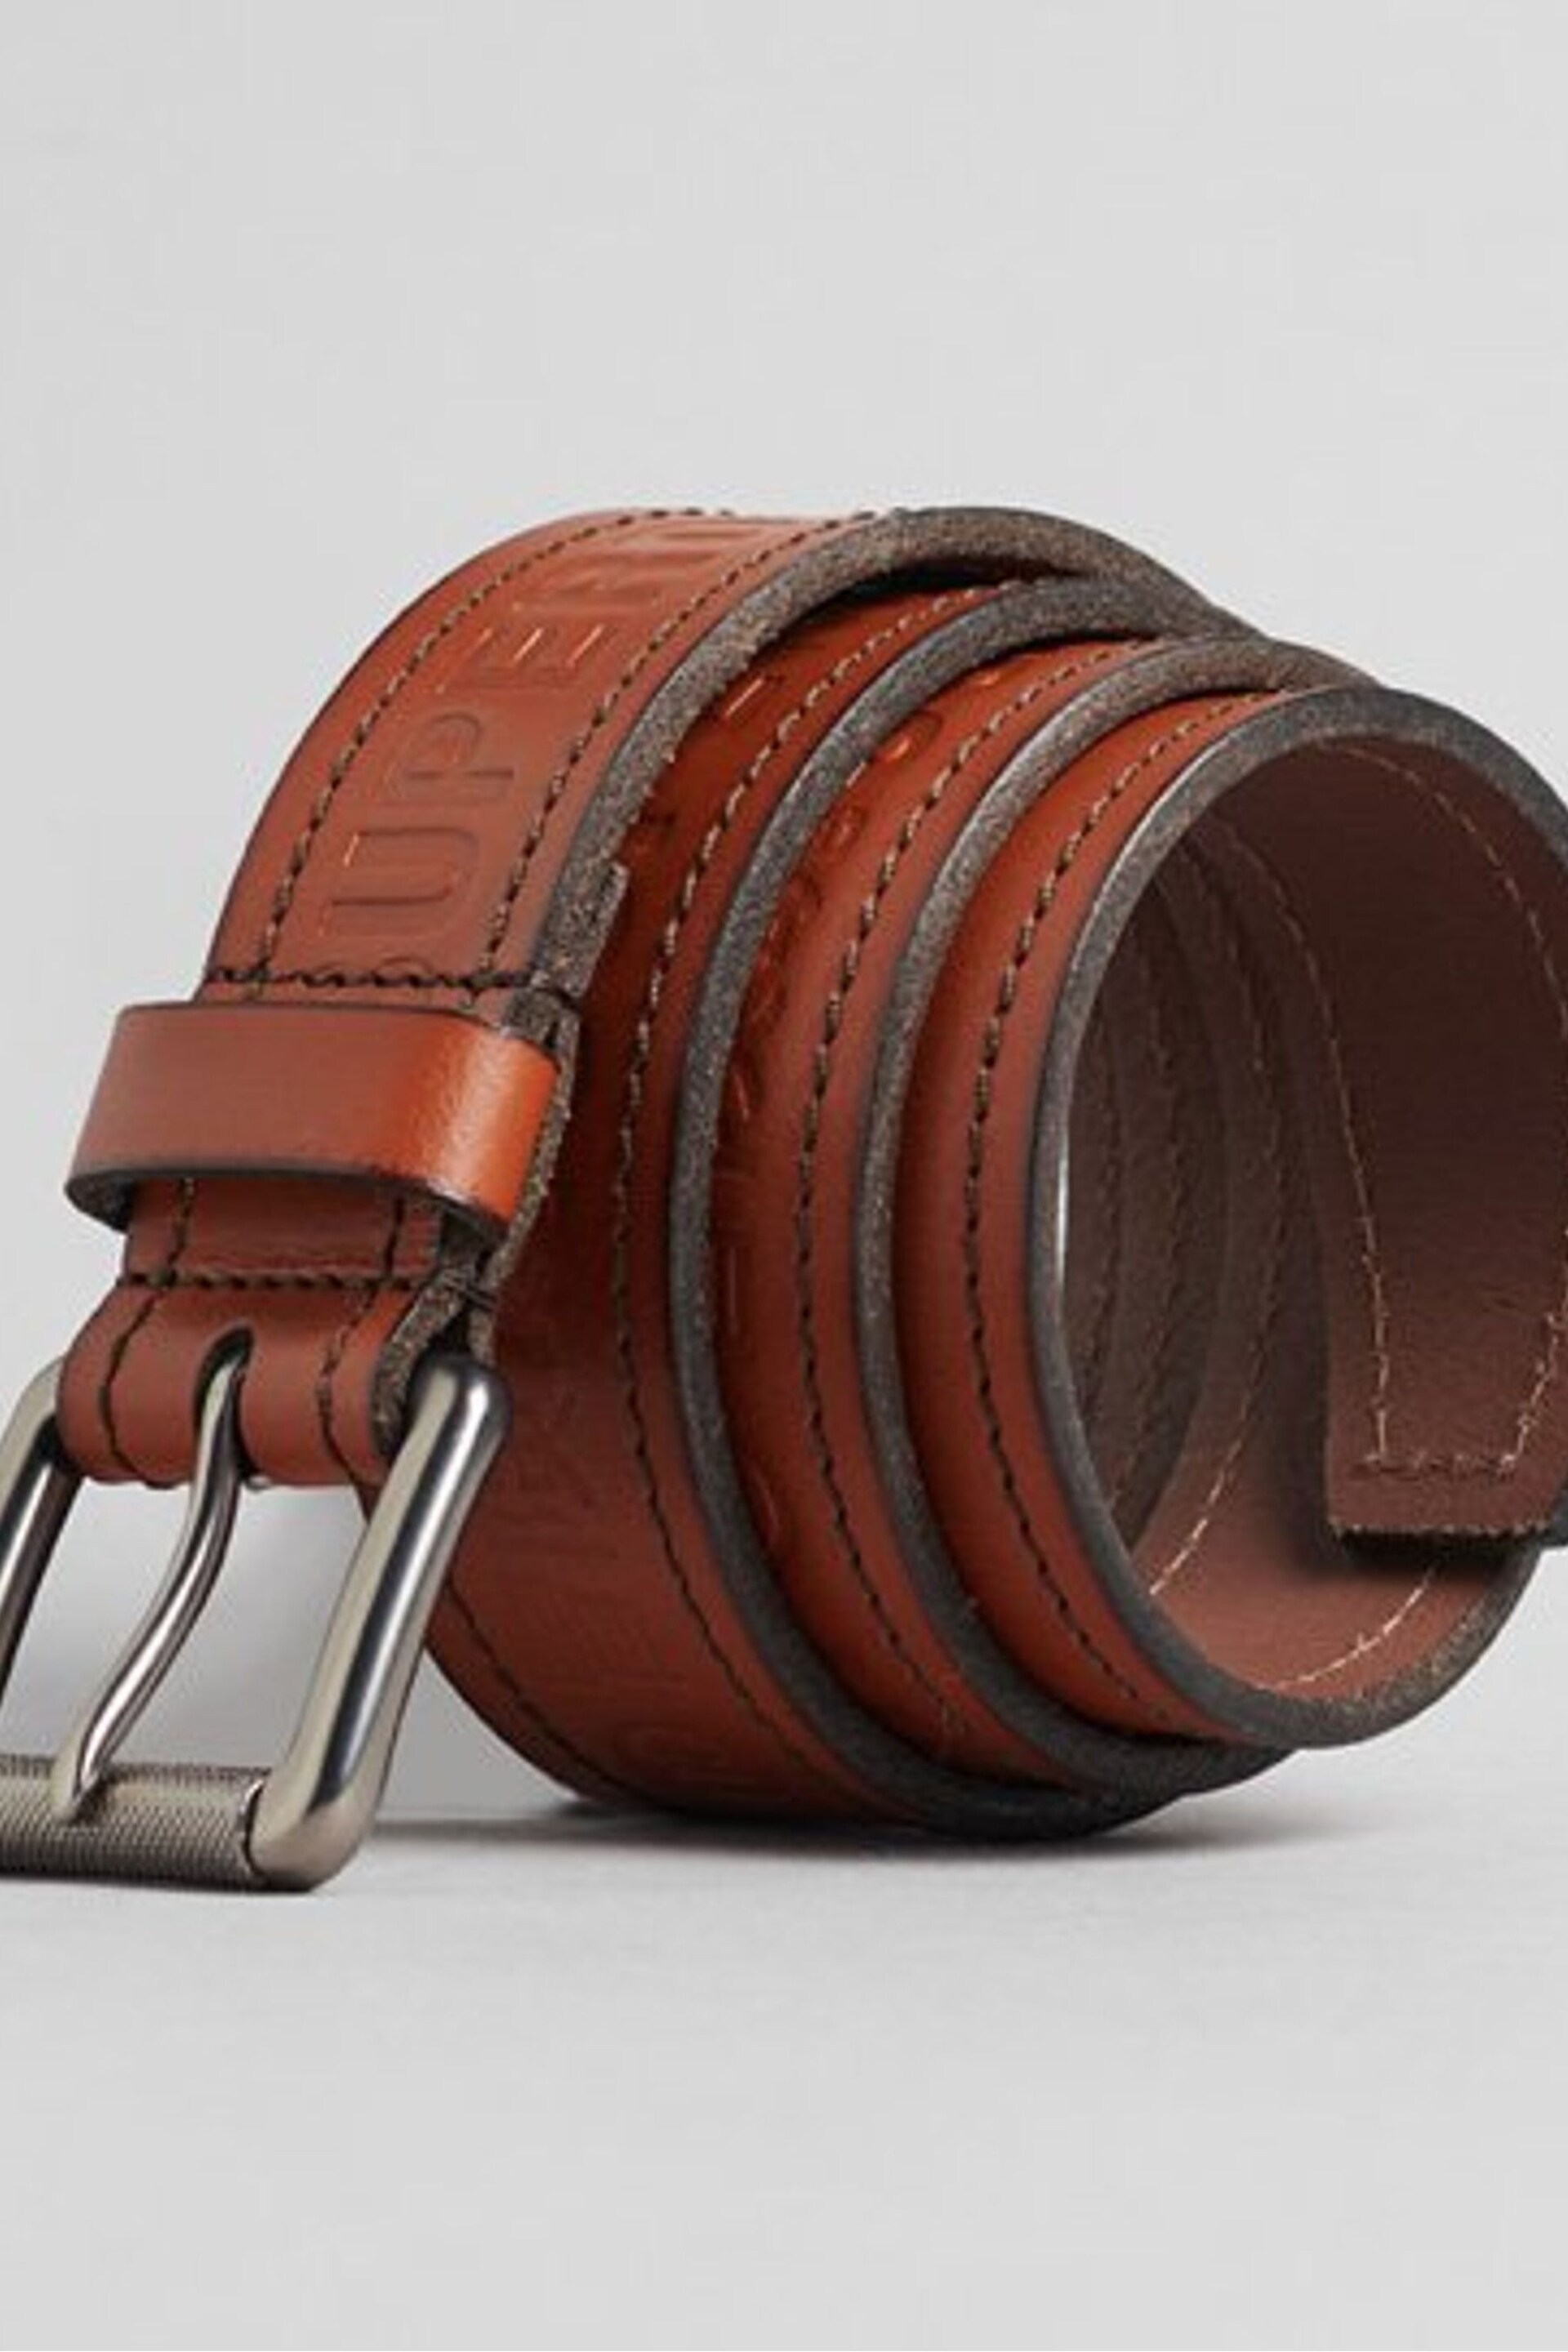 Superdry Brown Vintage Branded Belt - Image 1 of 4